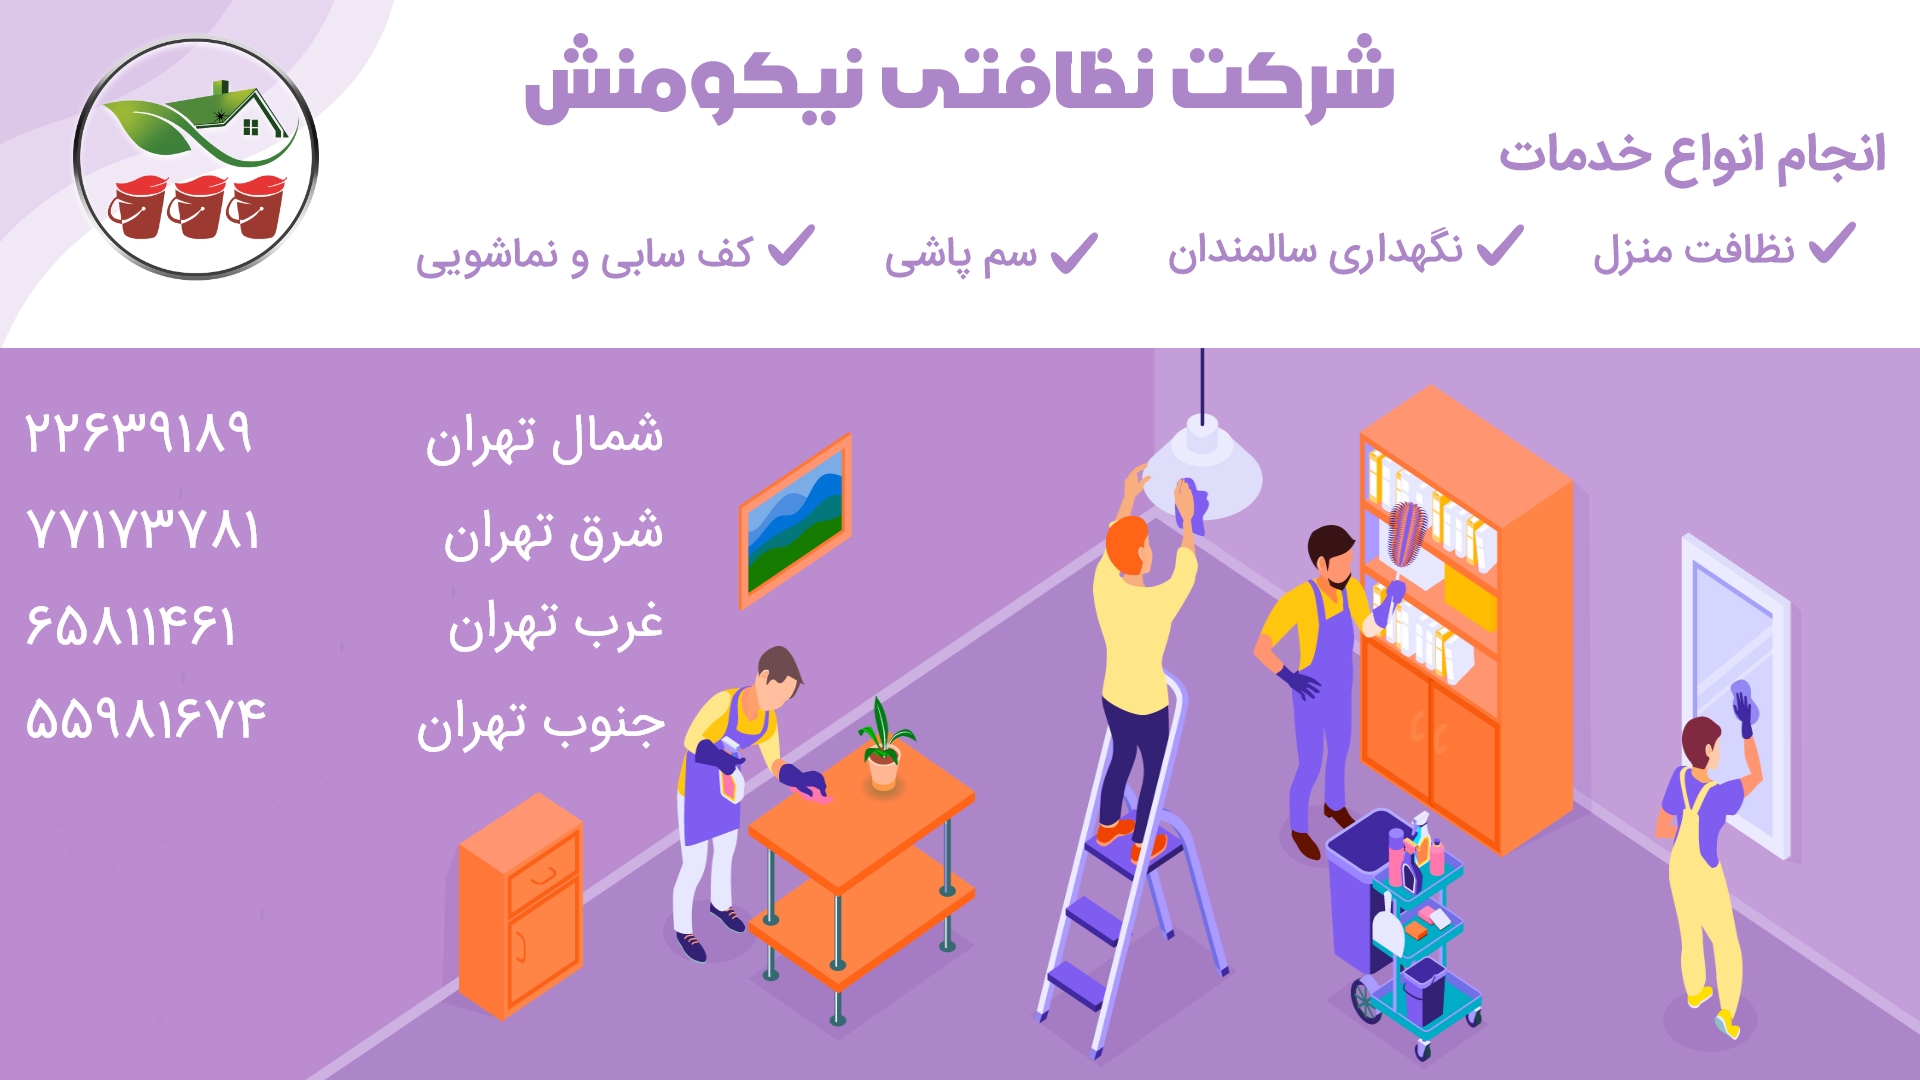 نظافت راه پله شمال تهران و نظافت منزل شمال تهران